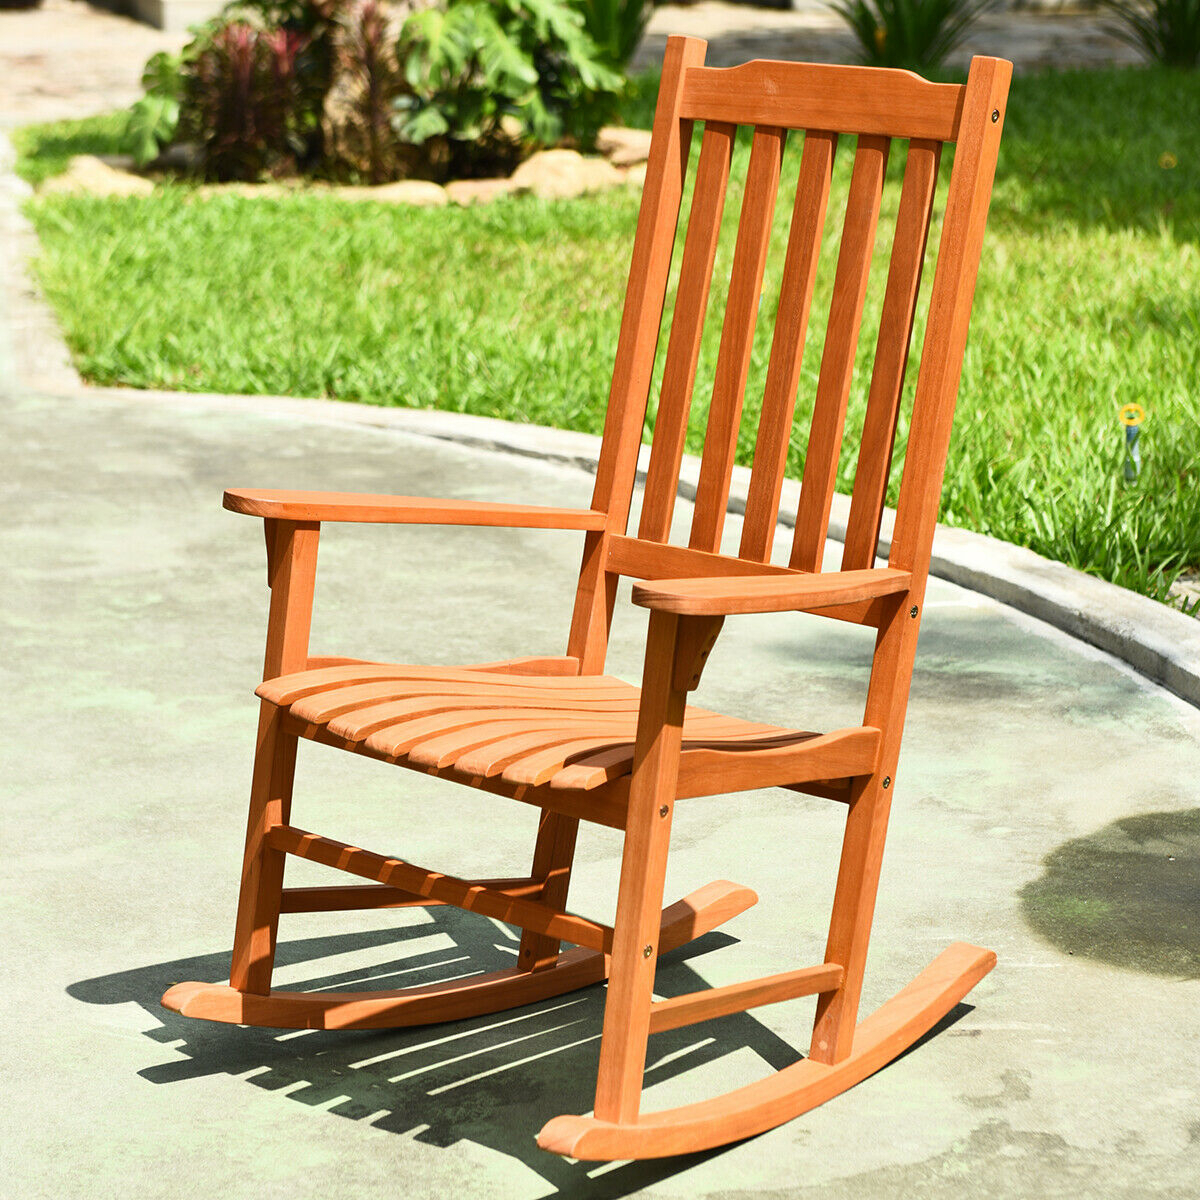 Outdoor Eucalyptus Rocking Chair Single Rocker For Patio Deck Garden Natural